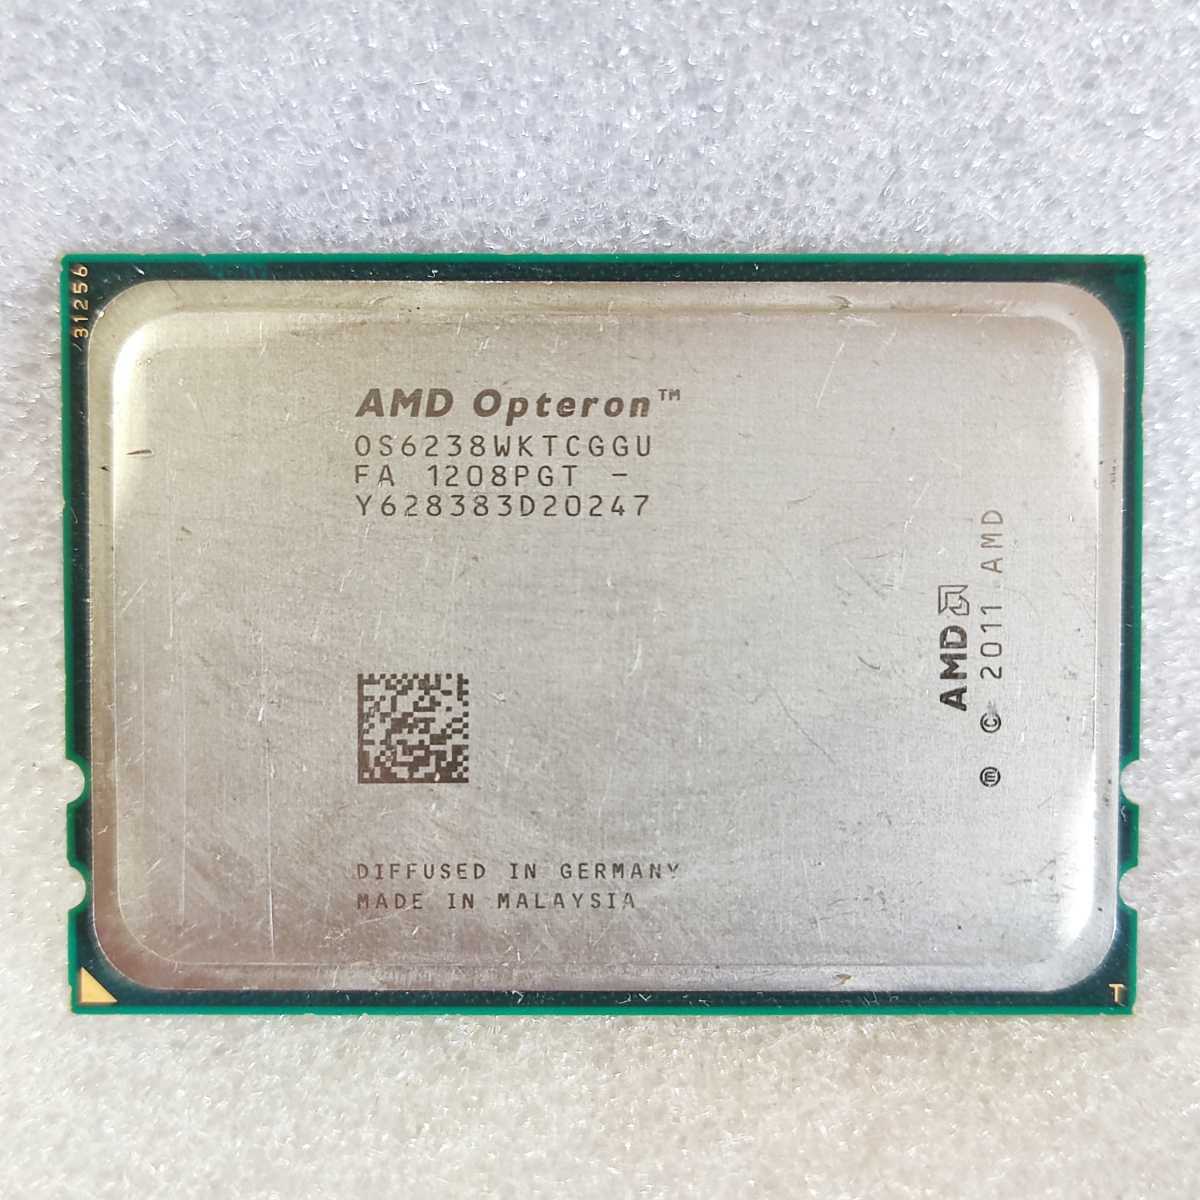 速達 送料無 ★ CPU AMD Opteron 6238 OS6238WKTCGGU 2.6GHz SocketG34 ★確認済 C173u_画像1